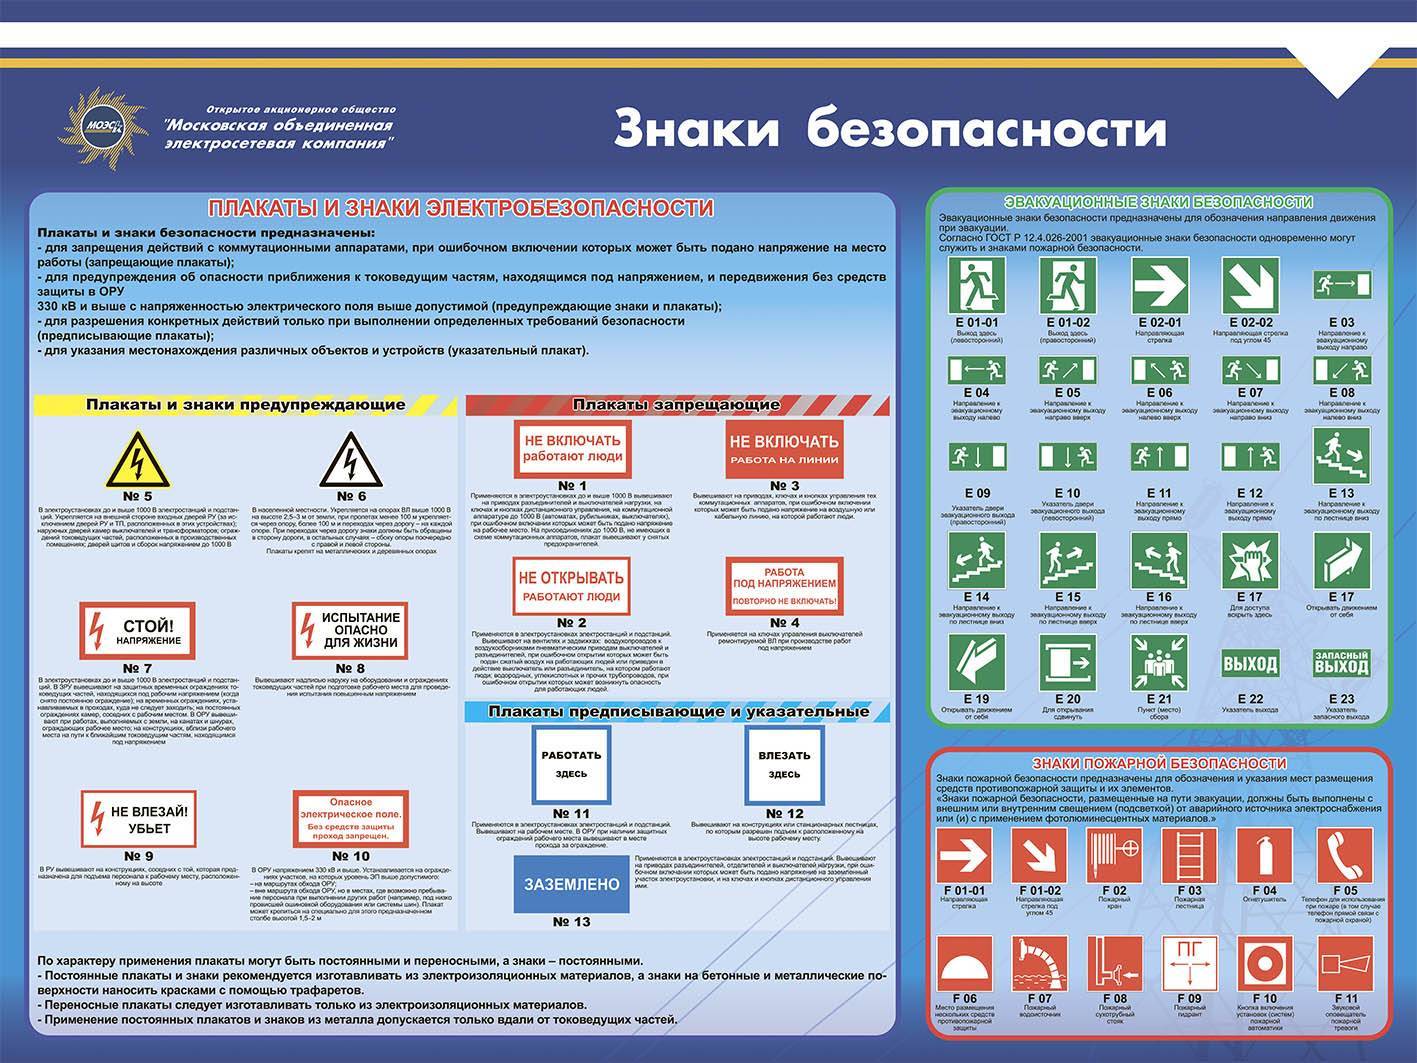 Знаки электробезопасности, плакаты применяемые в электроустановках